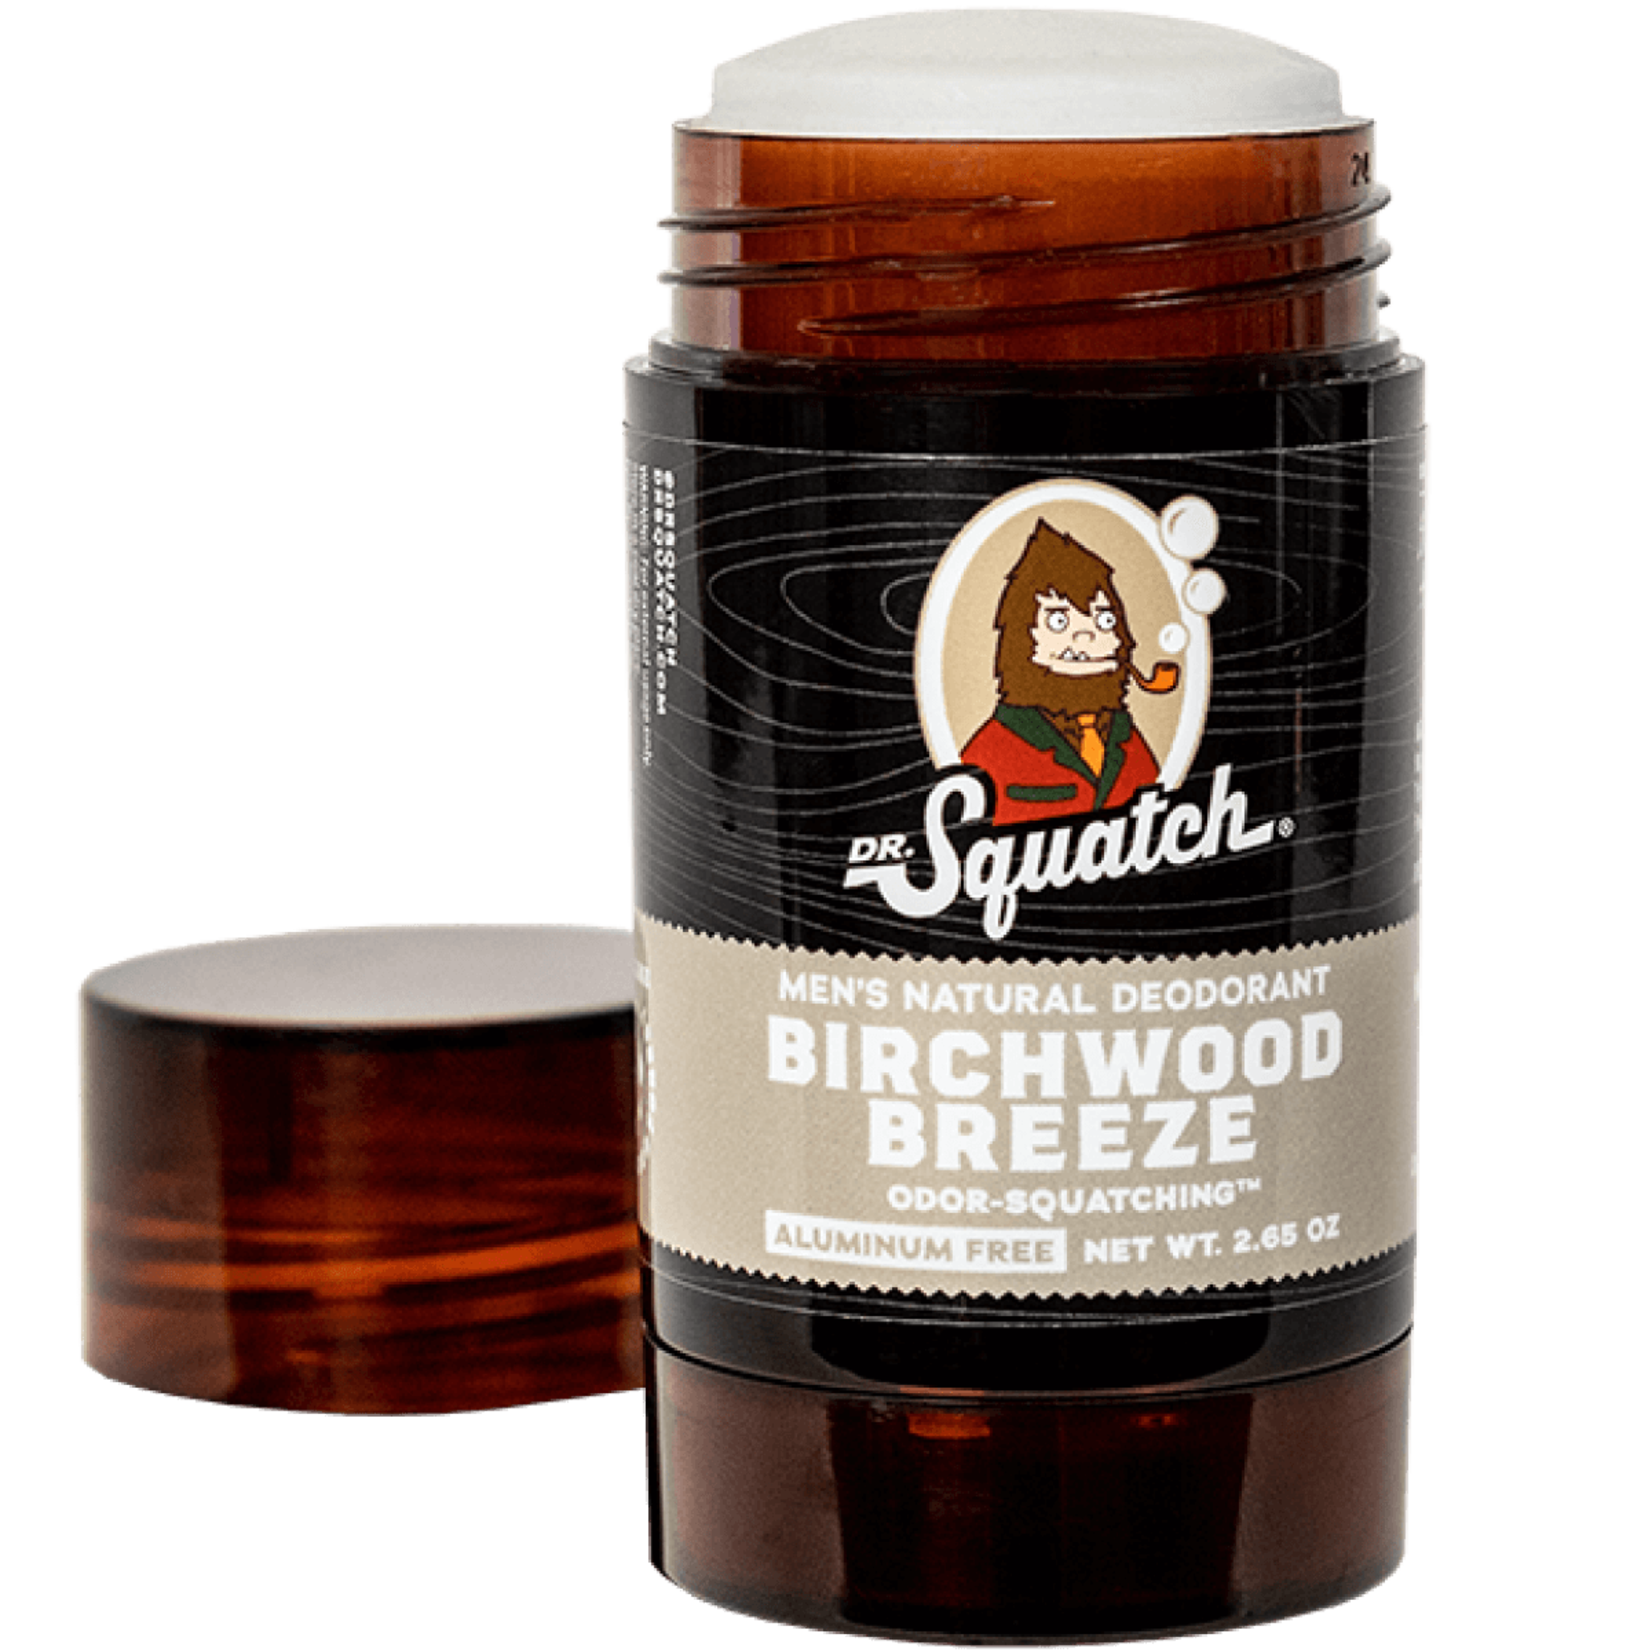 Dr Squatch Dr. Squatch - Birchwood Breeze Deodorant - 2.65 oz